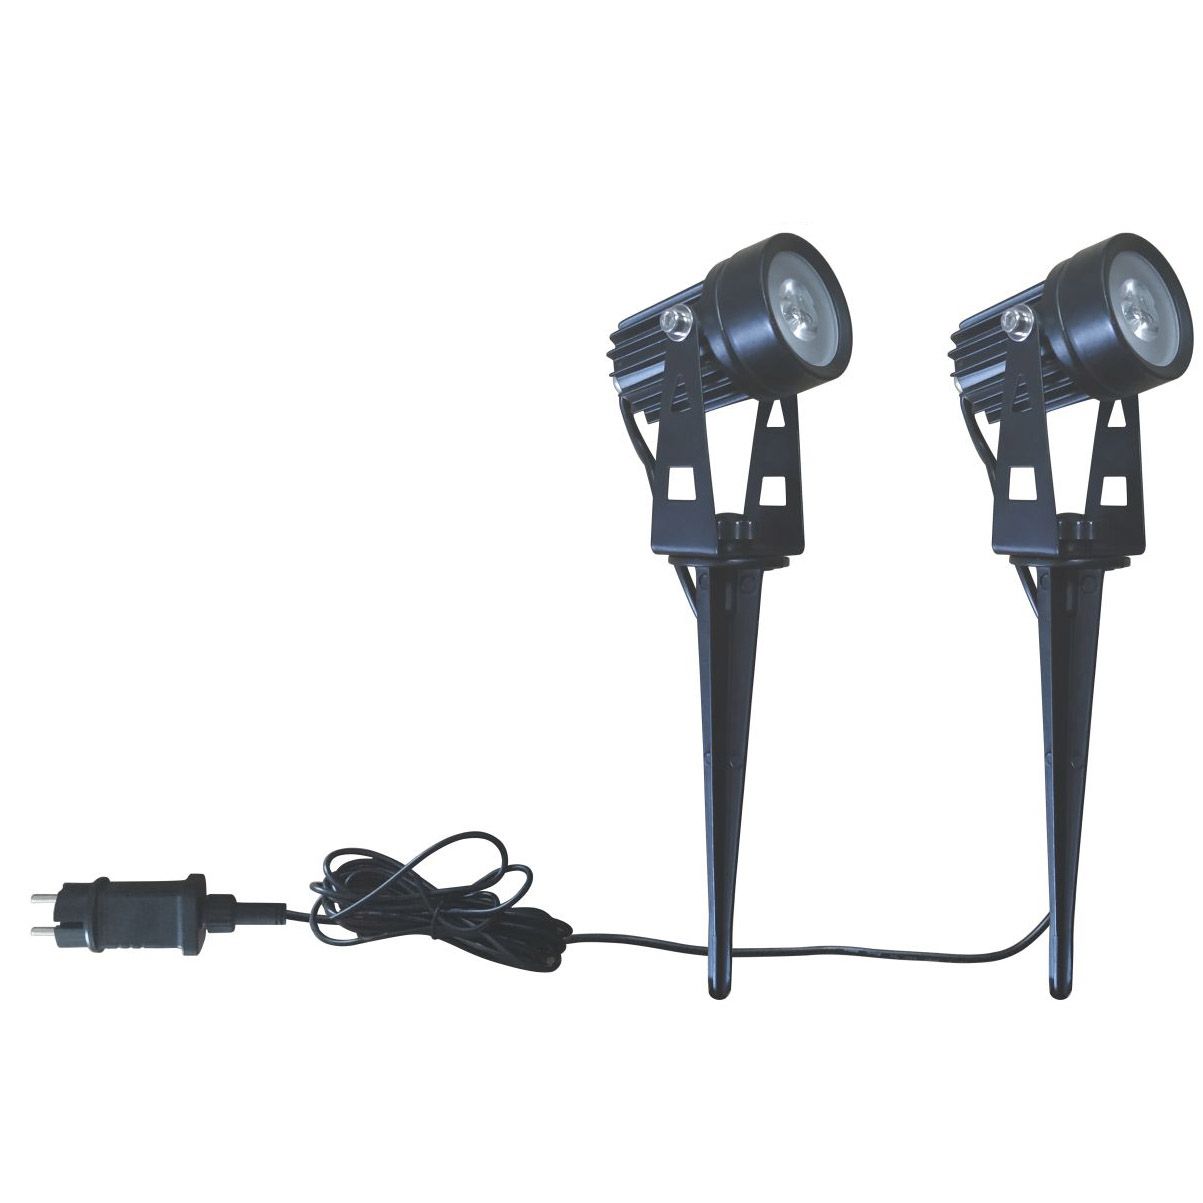 2-Pack LED Garden Spike Light (ErP 3600h) - GLED-807SP-2. 2-Pack LED Garden Spike Light::CE/EMC/RoHS/ErP(3600h durability test)